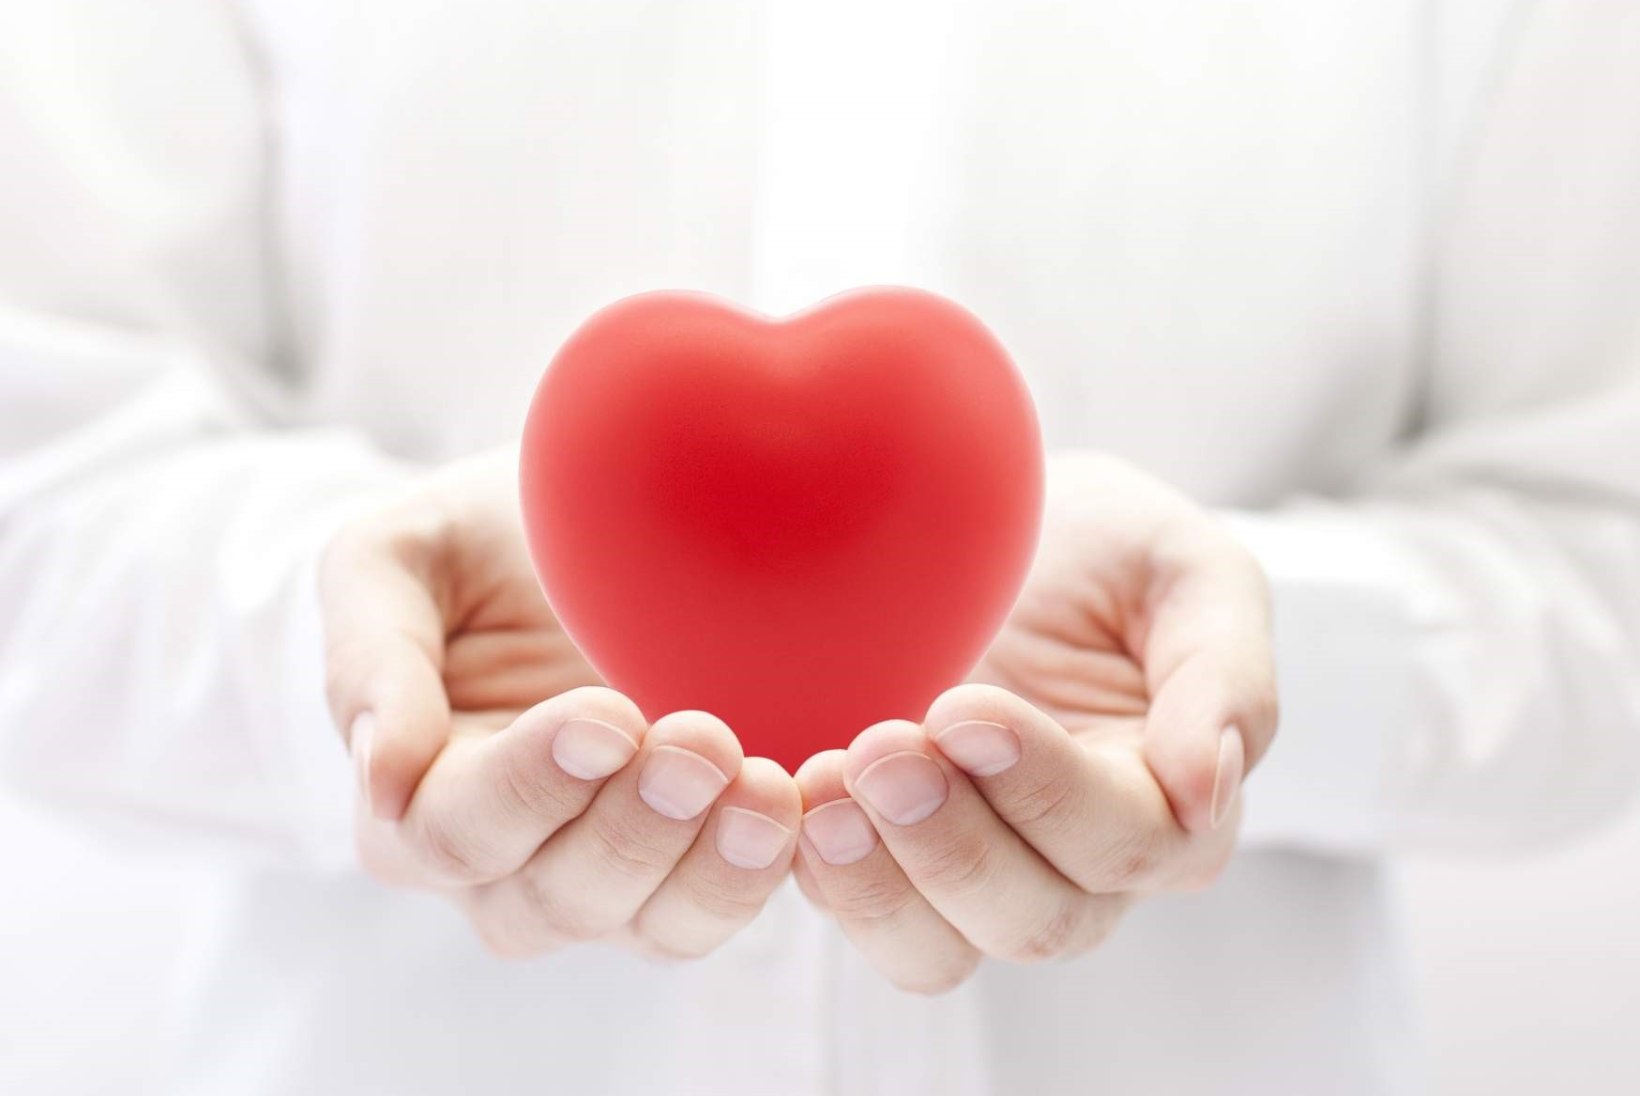 Koeensüüm Q10 leevendab südamepuudulikkusega patsientide olukorda